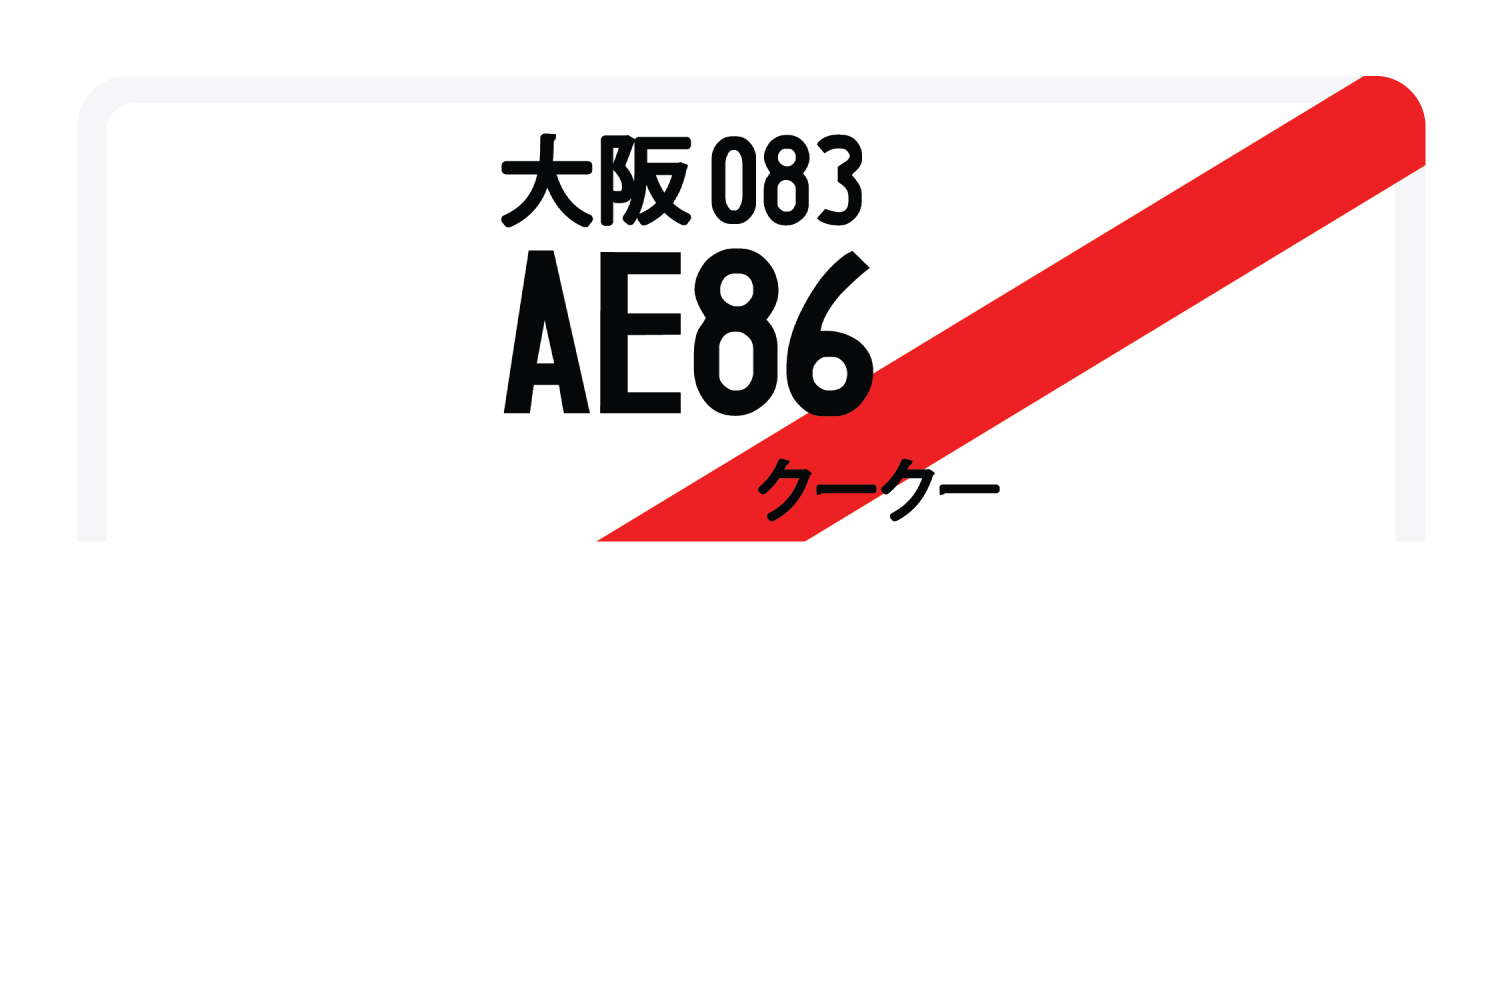 AE86